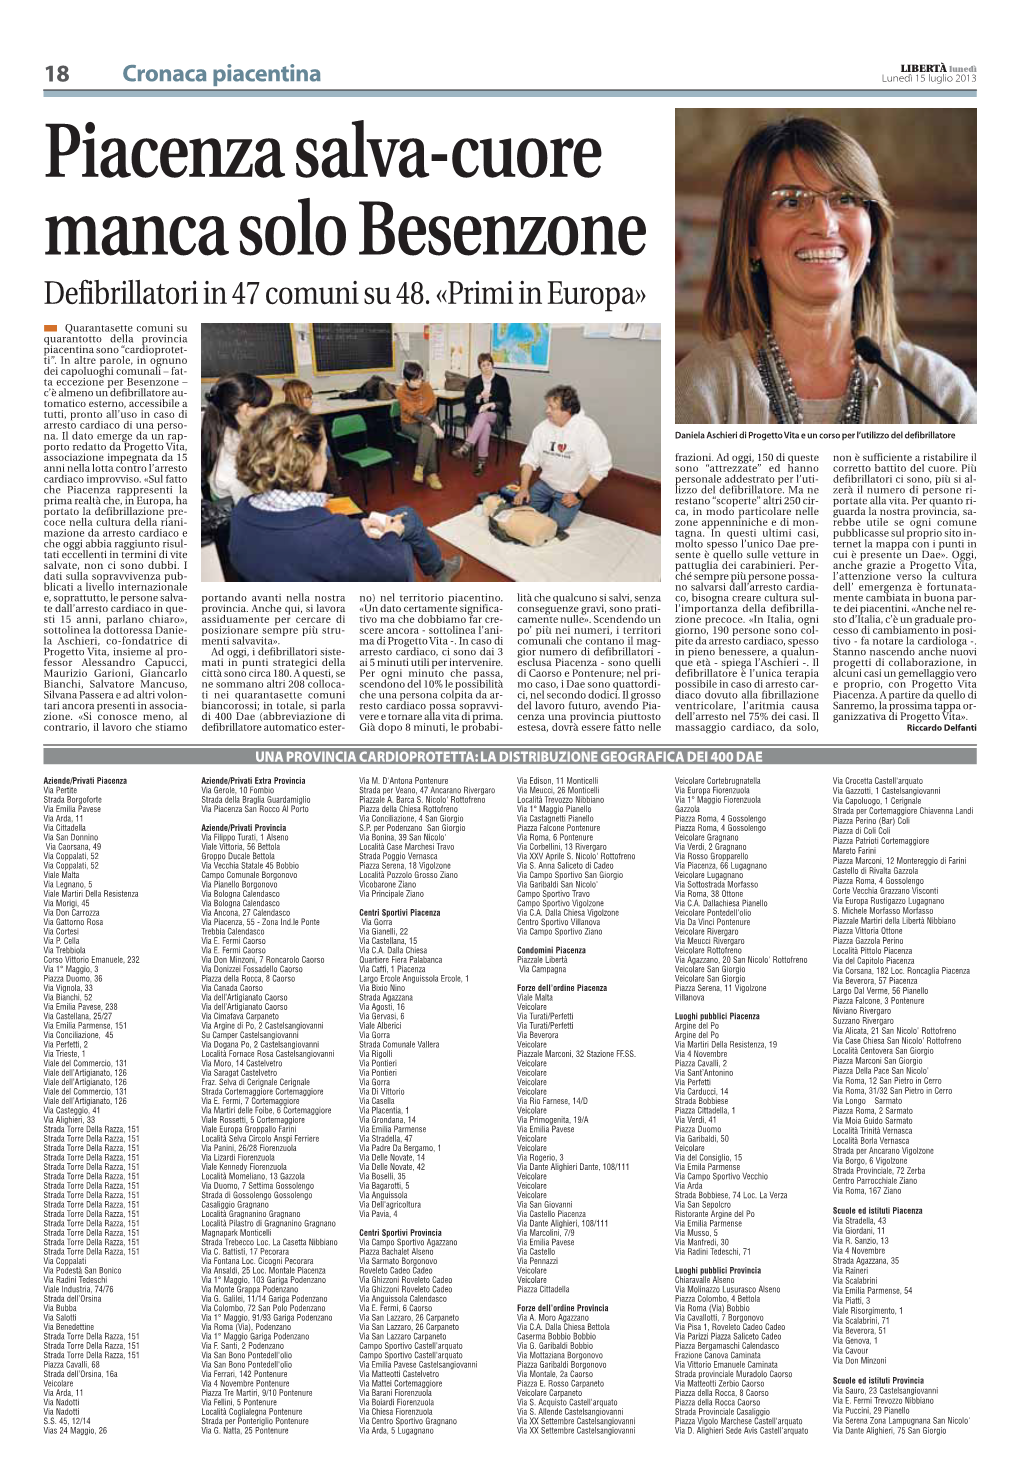 Piacenza Salva-Cuore Manca Solo Besenzone Defibrillatori in 47 Comuni Su 48